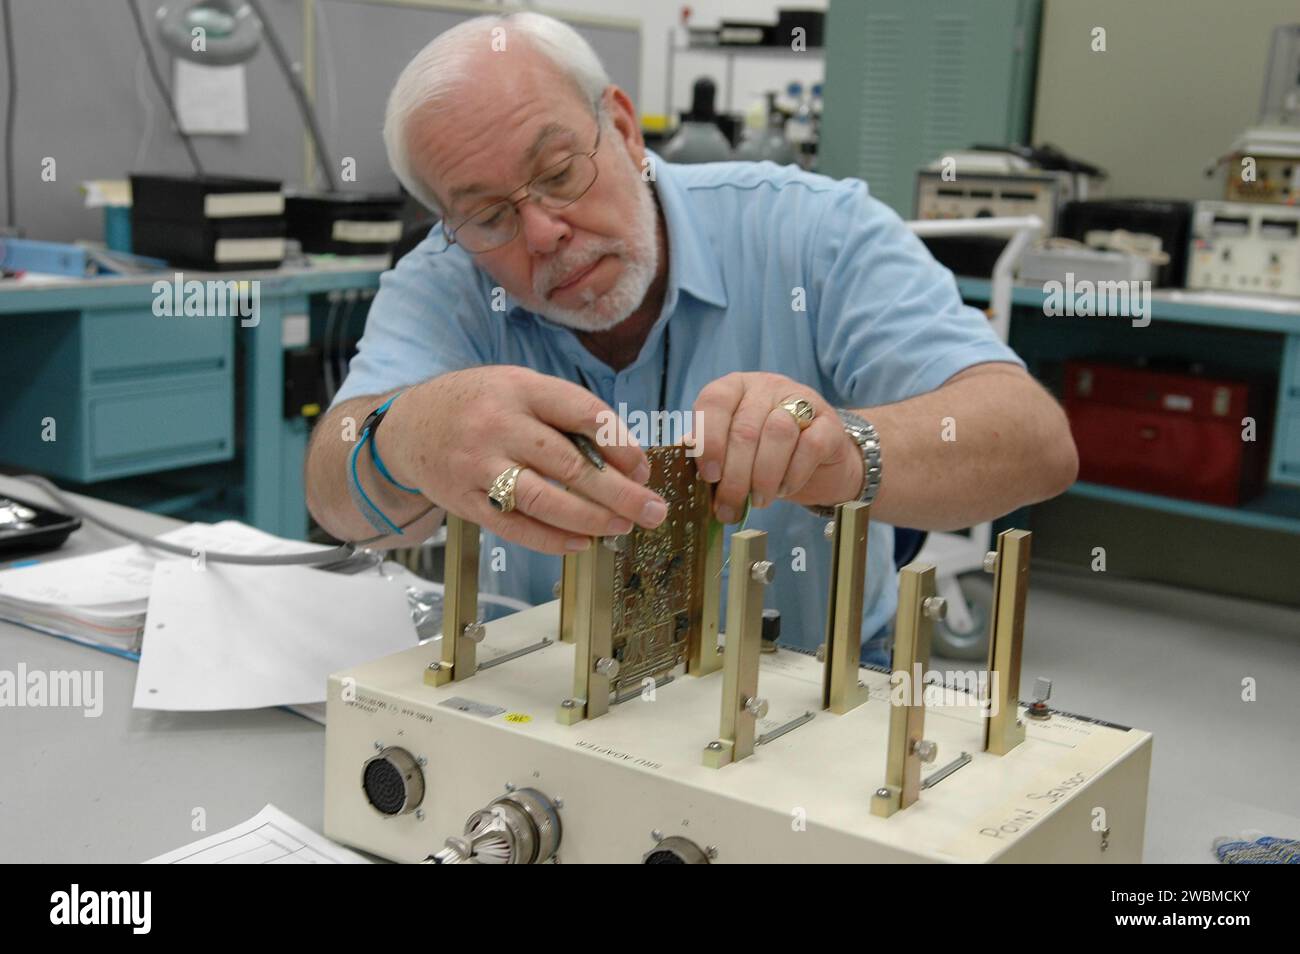 KENNEDY SPACE CENTER, FLA. Lloyd Pierce, un ingegnere di test della NASA, controlla i componenti elettronici relativi alle letture errate del sensore nel sensore di interruzione del combustibile a basso livello del serbatoio di idrogeno liquido. Il sensore non ha superato un controllo di routine prima del lancio durante il lancio del 13 luglio, causando ai responsabili delle missioni lo scrubbing del primo tentativo di lancio della Discovery. Il sensore protegge i motori principali dell'inversore innescandone l'arresto nel caso in cui il carburante si esaurisca inaspettatamente. Il sensore è uno dei quattro all'interno della sezione idrogeno liquido del serbatoio esterno (ET). Foto Stock